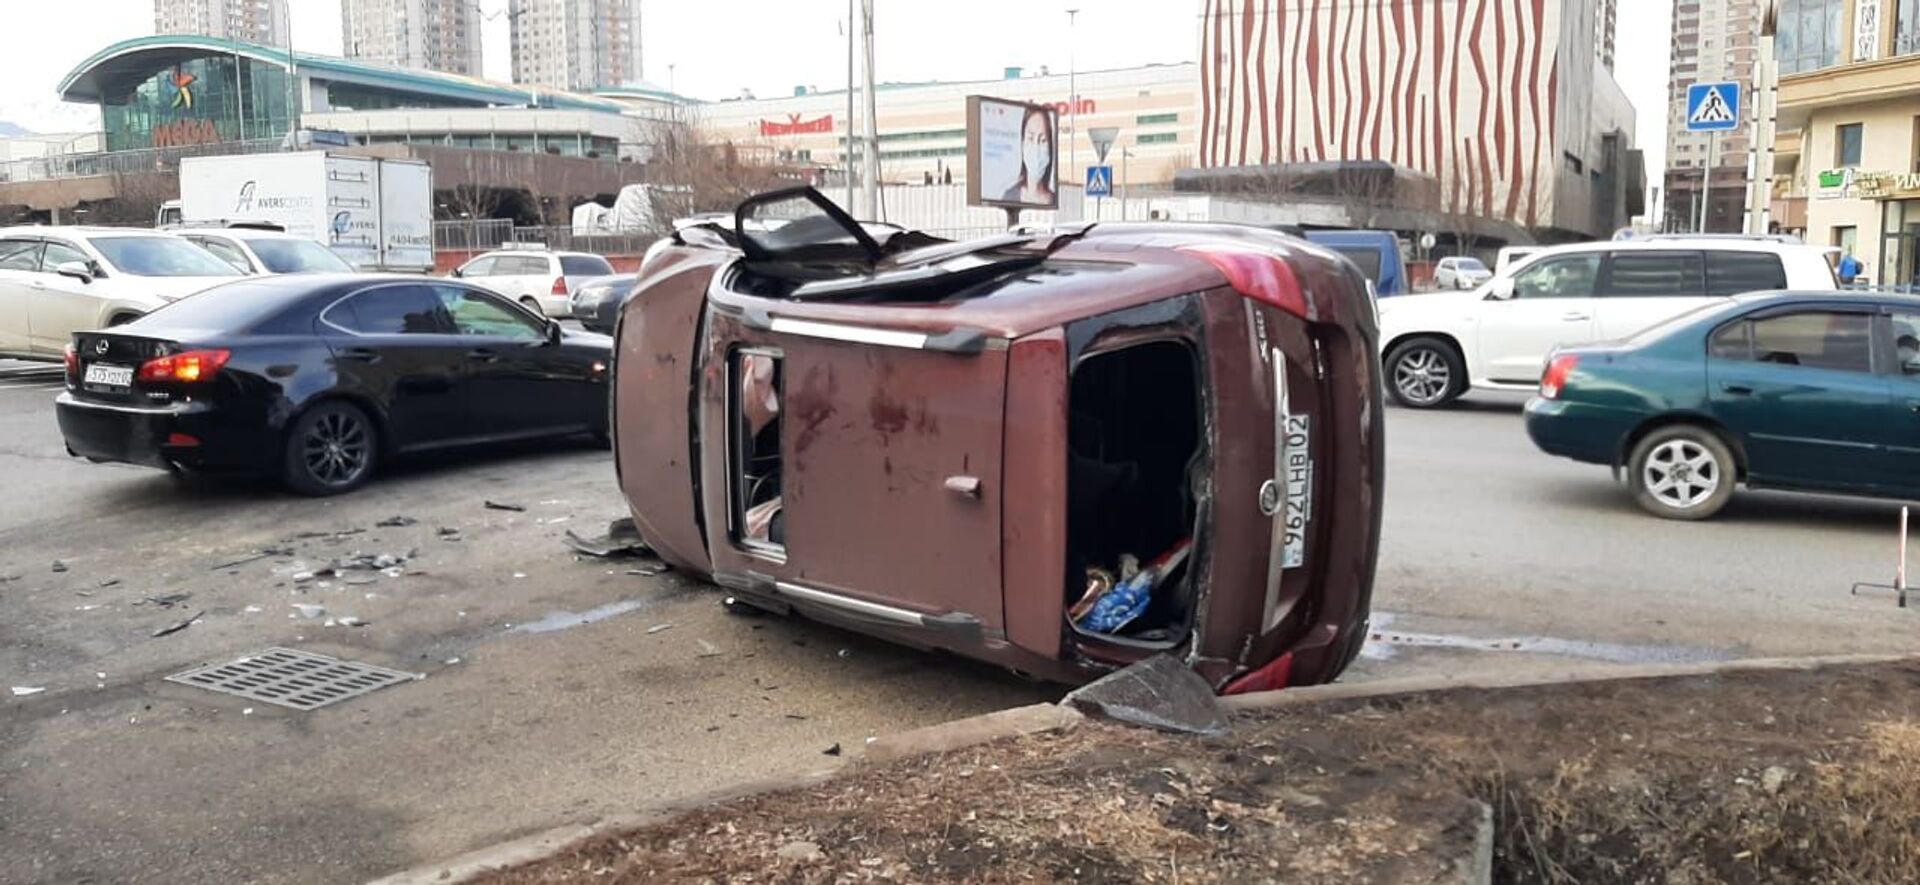 Два ДТП с участием пяти авто произошло в Алматы, есть пострадавшие - Sputnik Казахстан, 1920, 08.02.2021